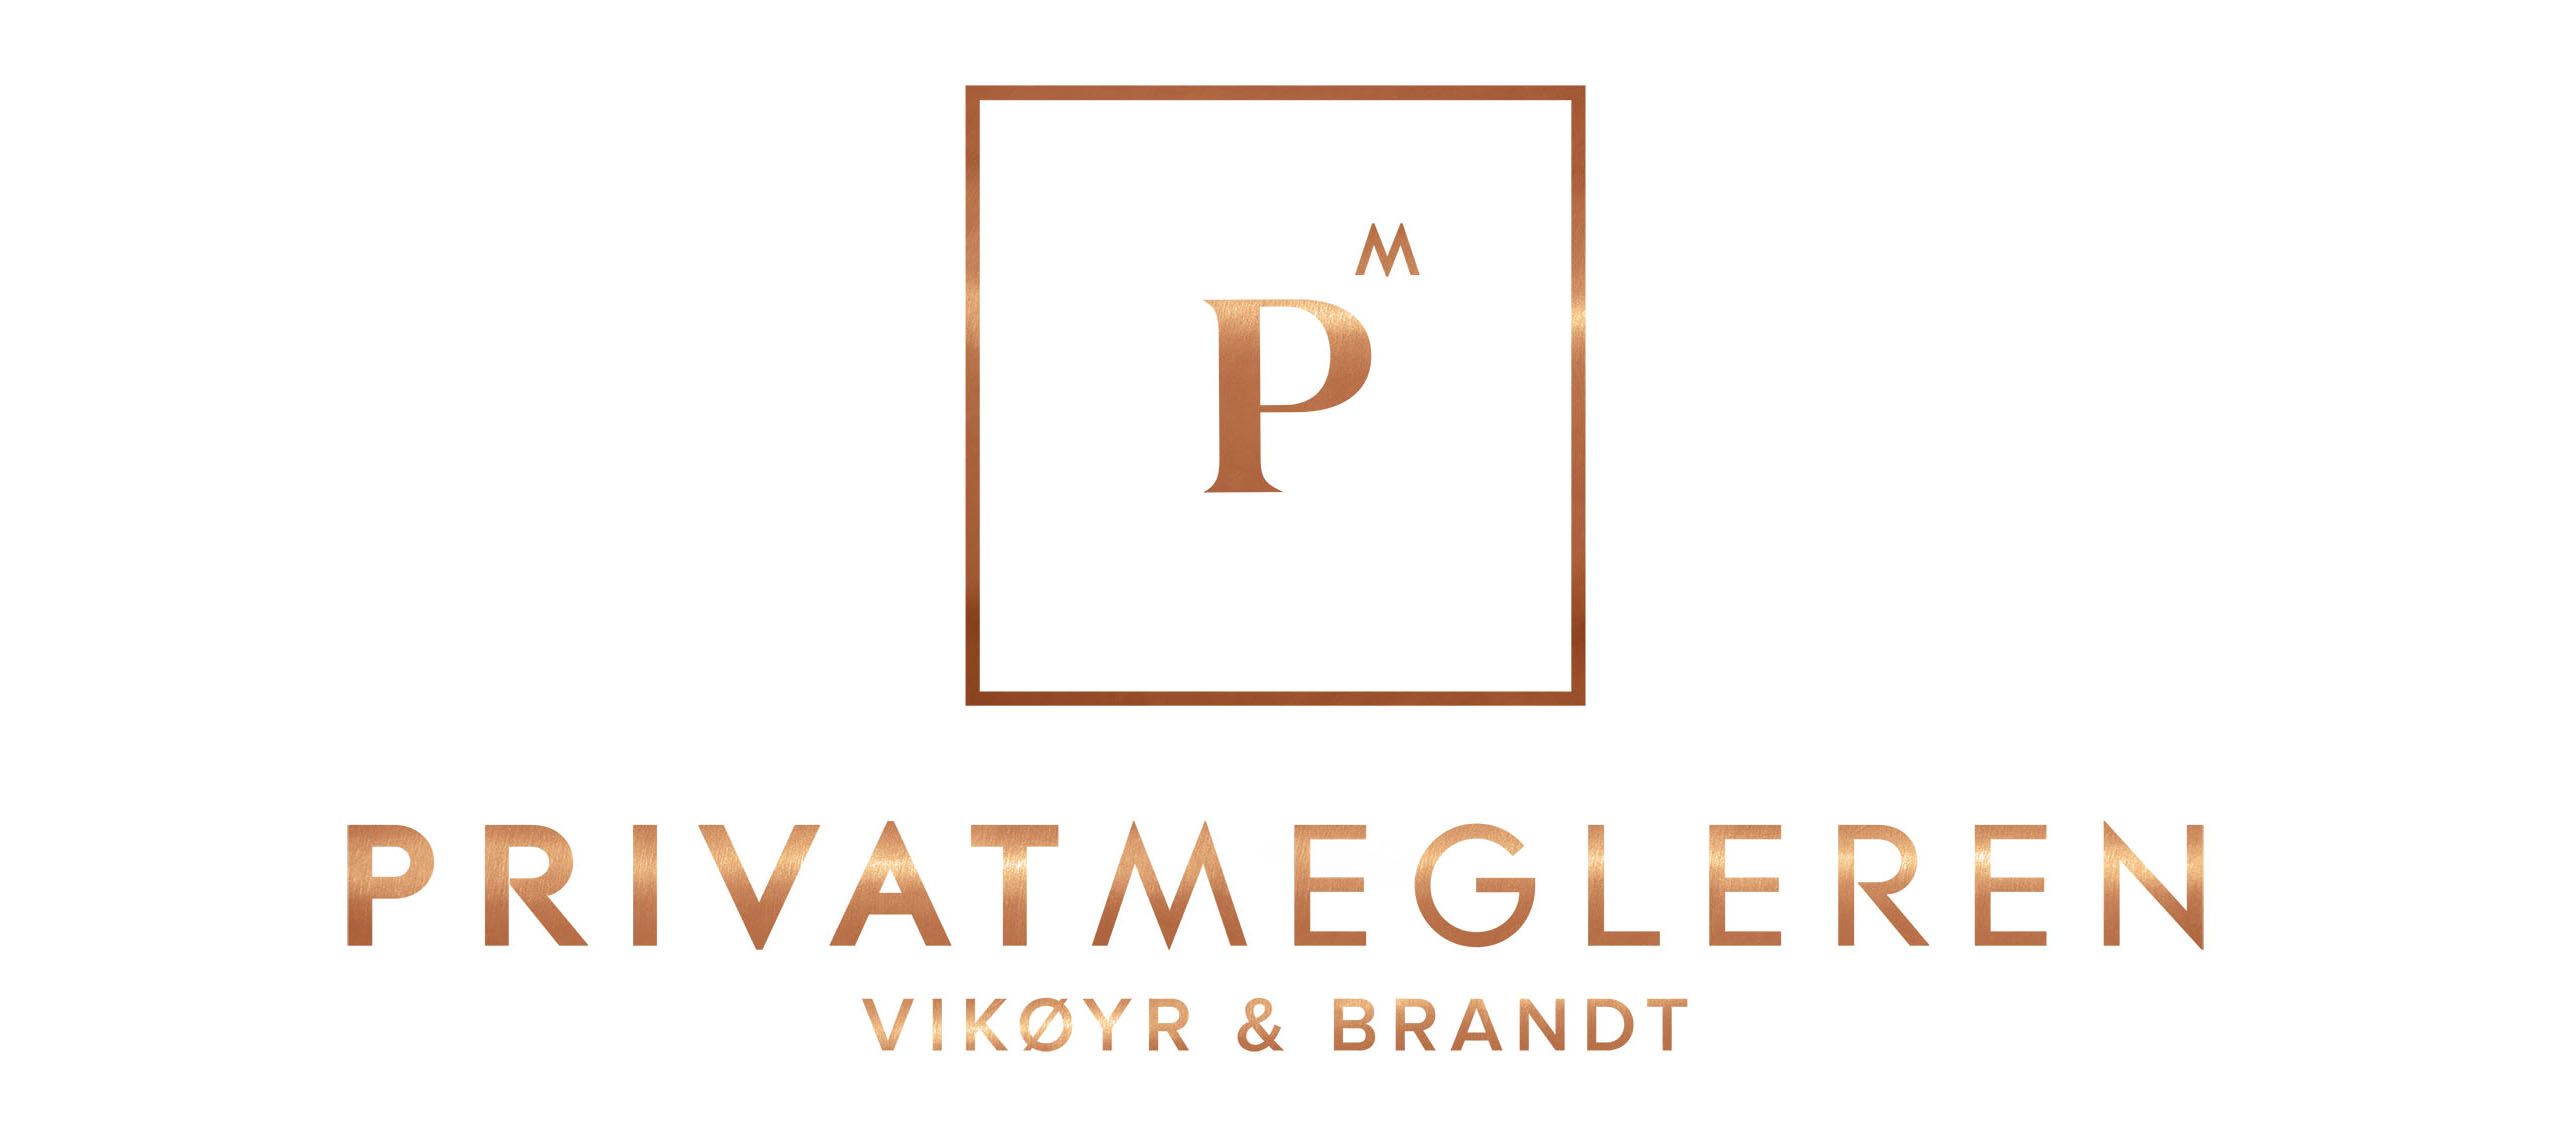 PrivatMegleren Vikøyr & Brandt